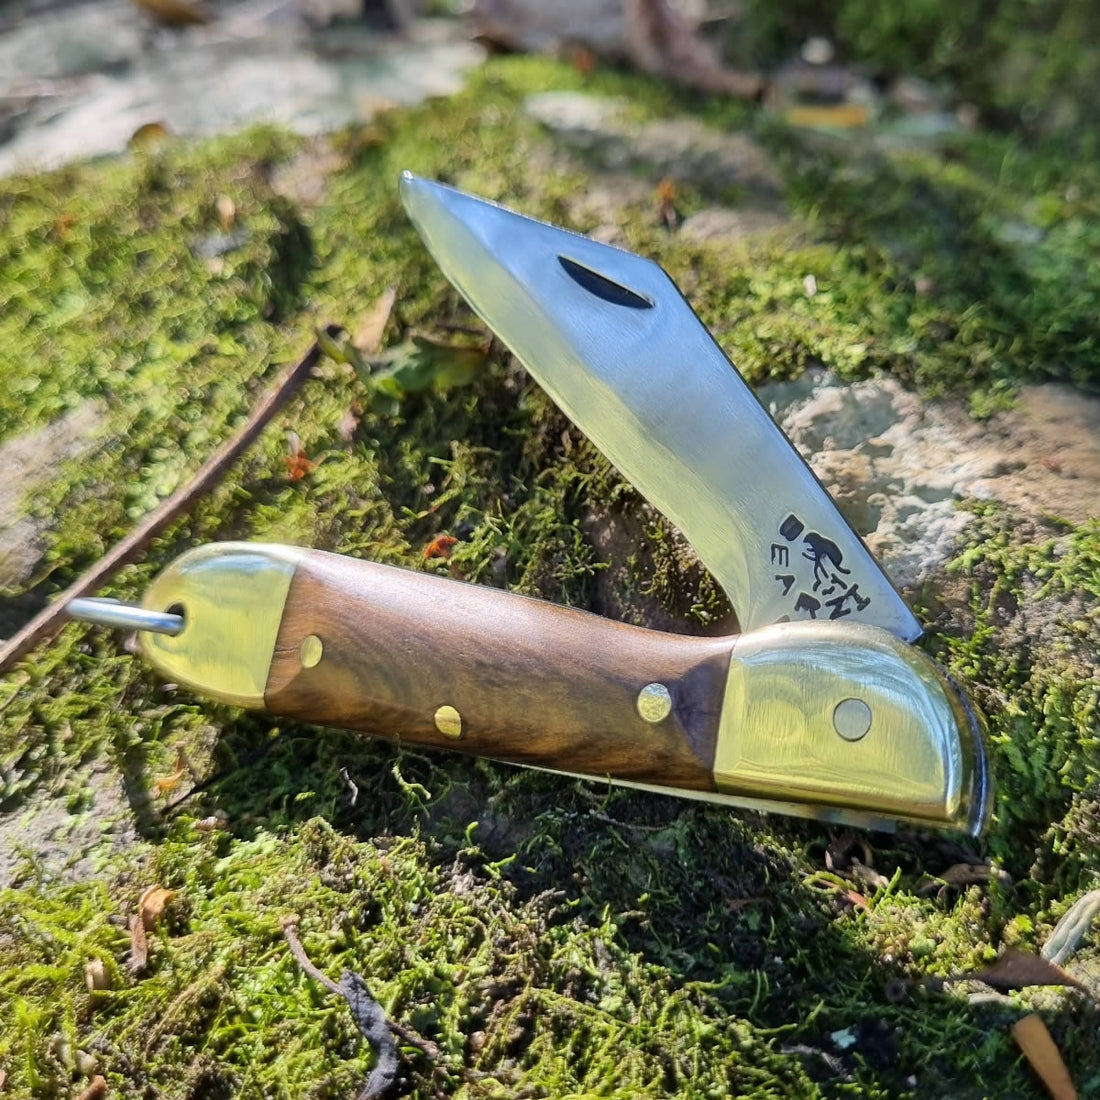 Furbem - Canivete modelo Patagonia com cabo em madeira e lâmina forjada em aço inox.